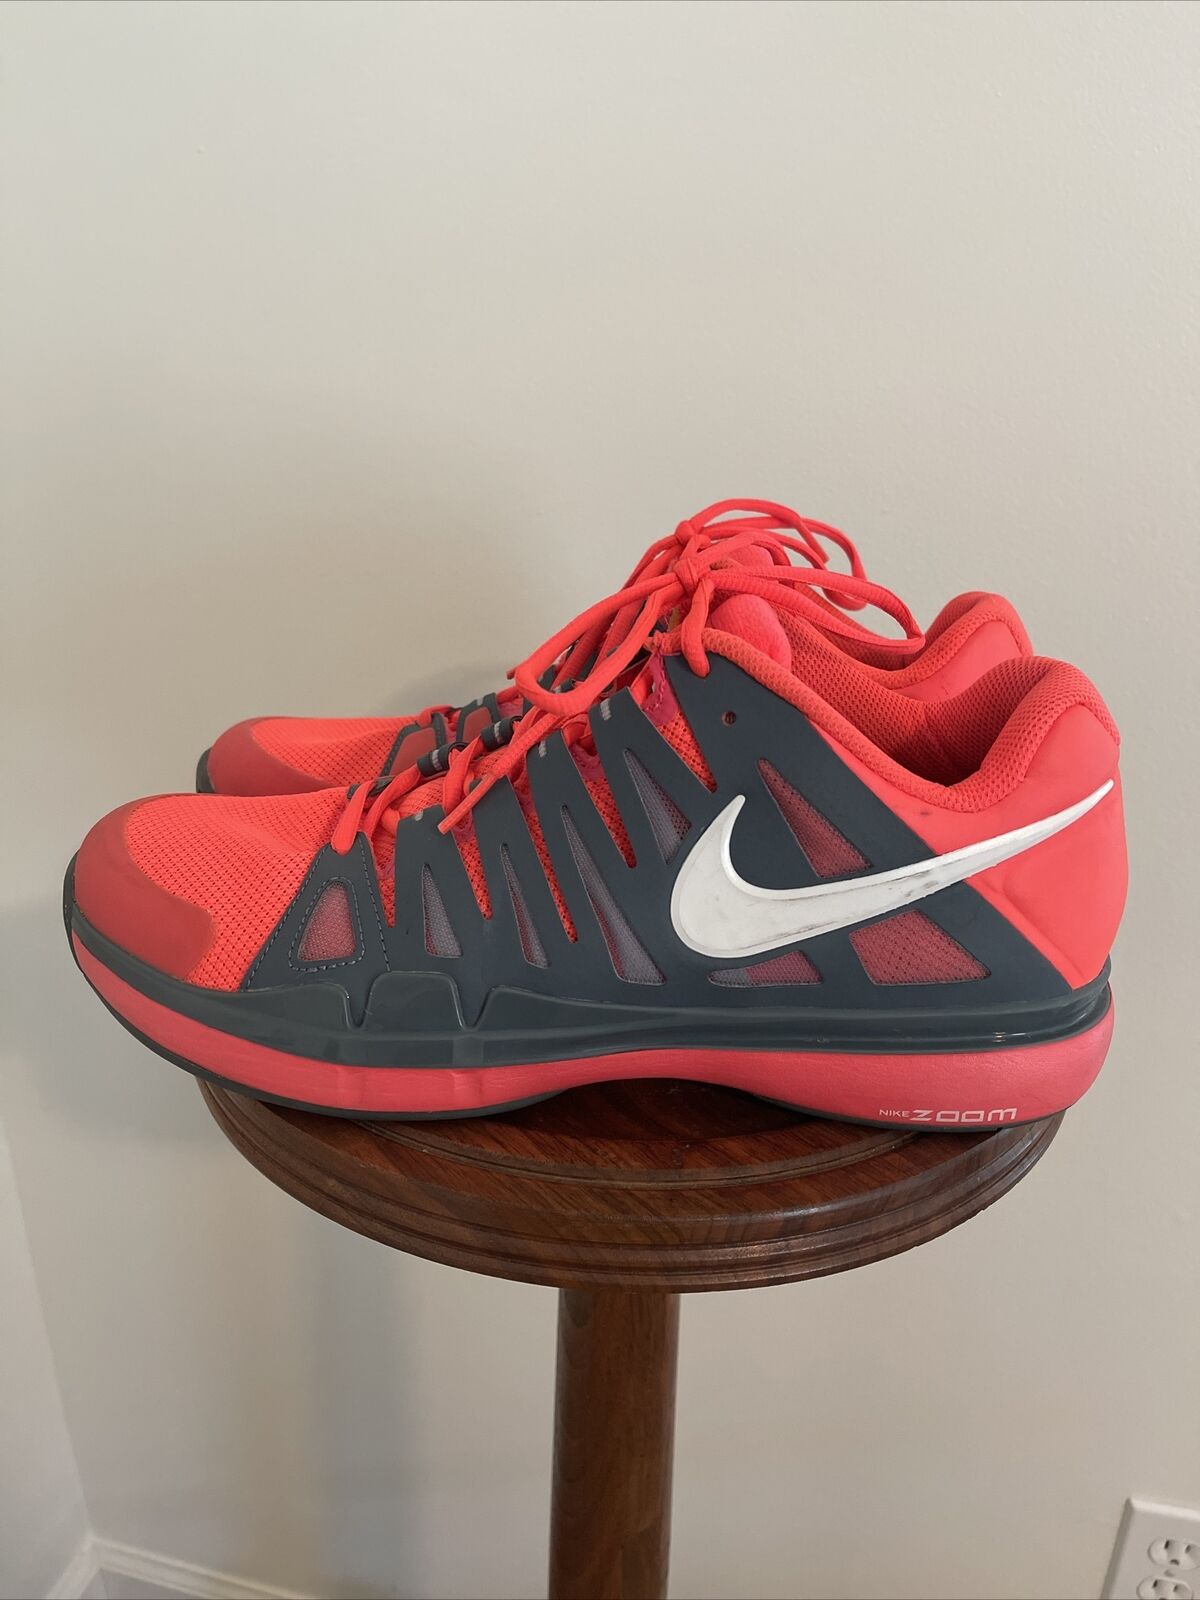 Nike Mens Zoom Vapor 9 Tour Tennis Court Shoes Roger Federer Sz 10 M 488000-614